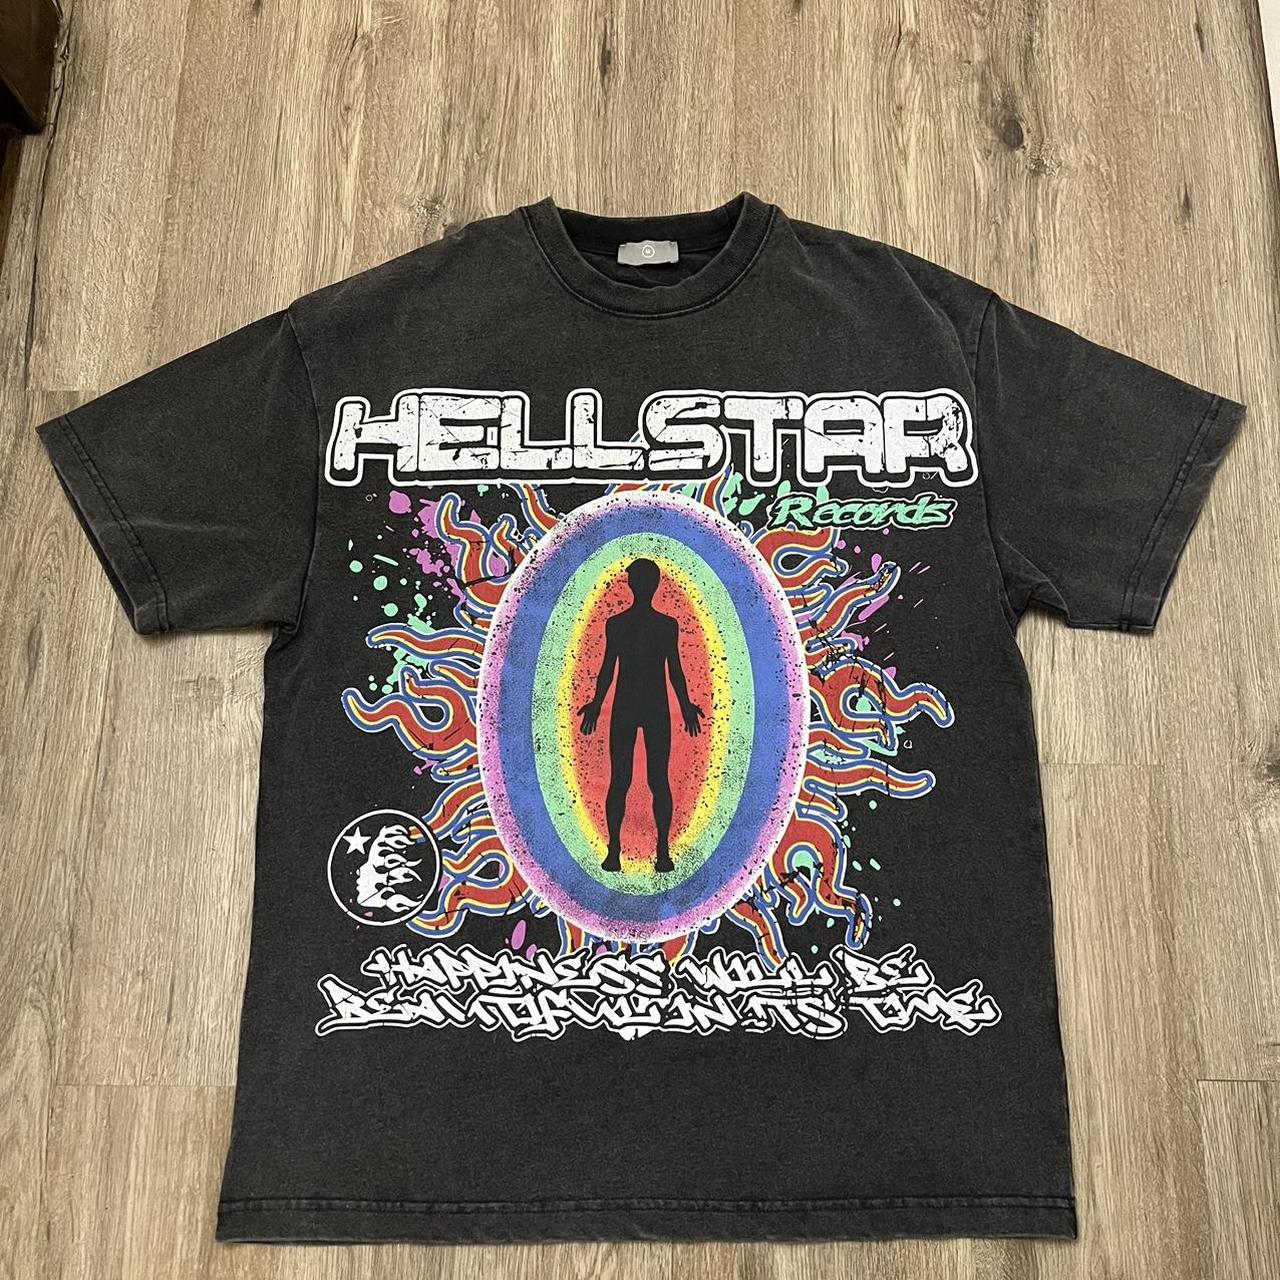 Hellstar shirt medium - Depop